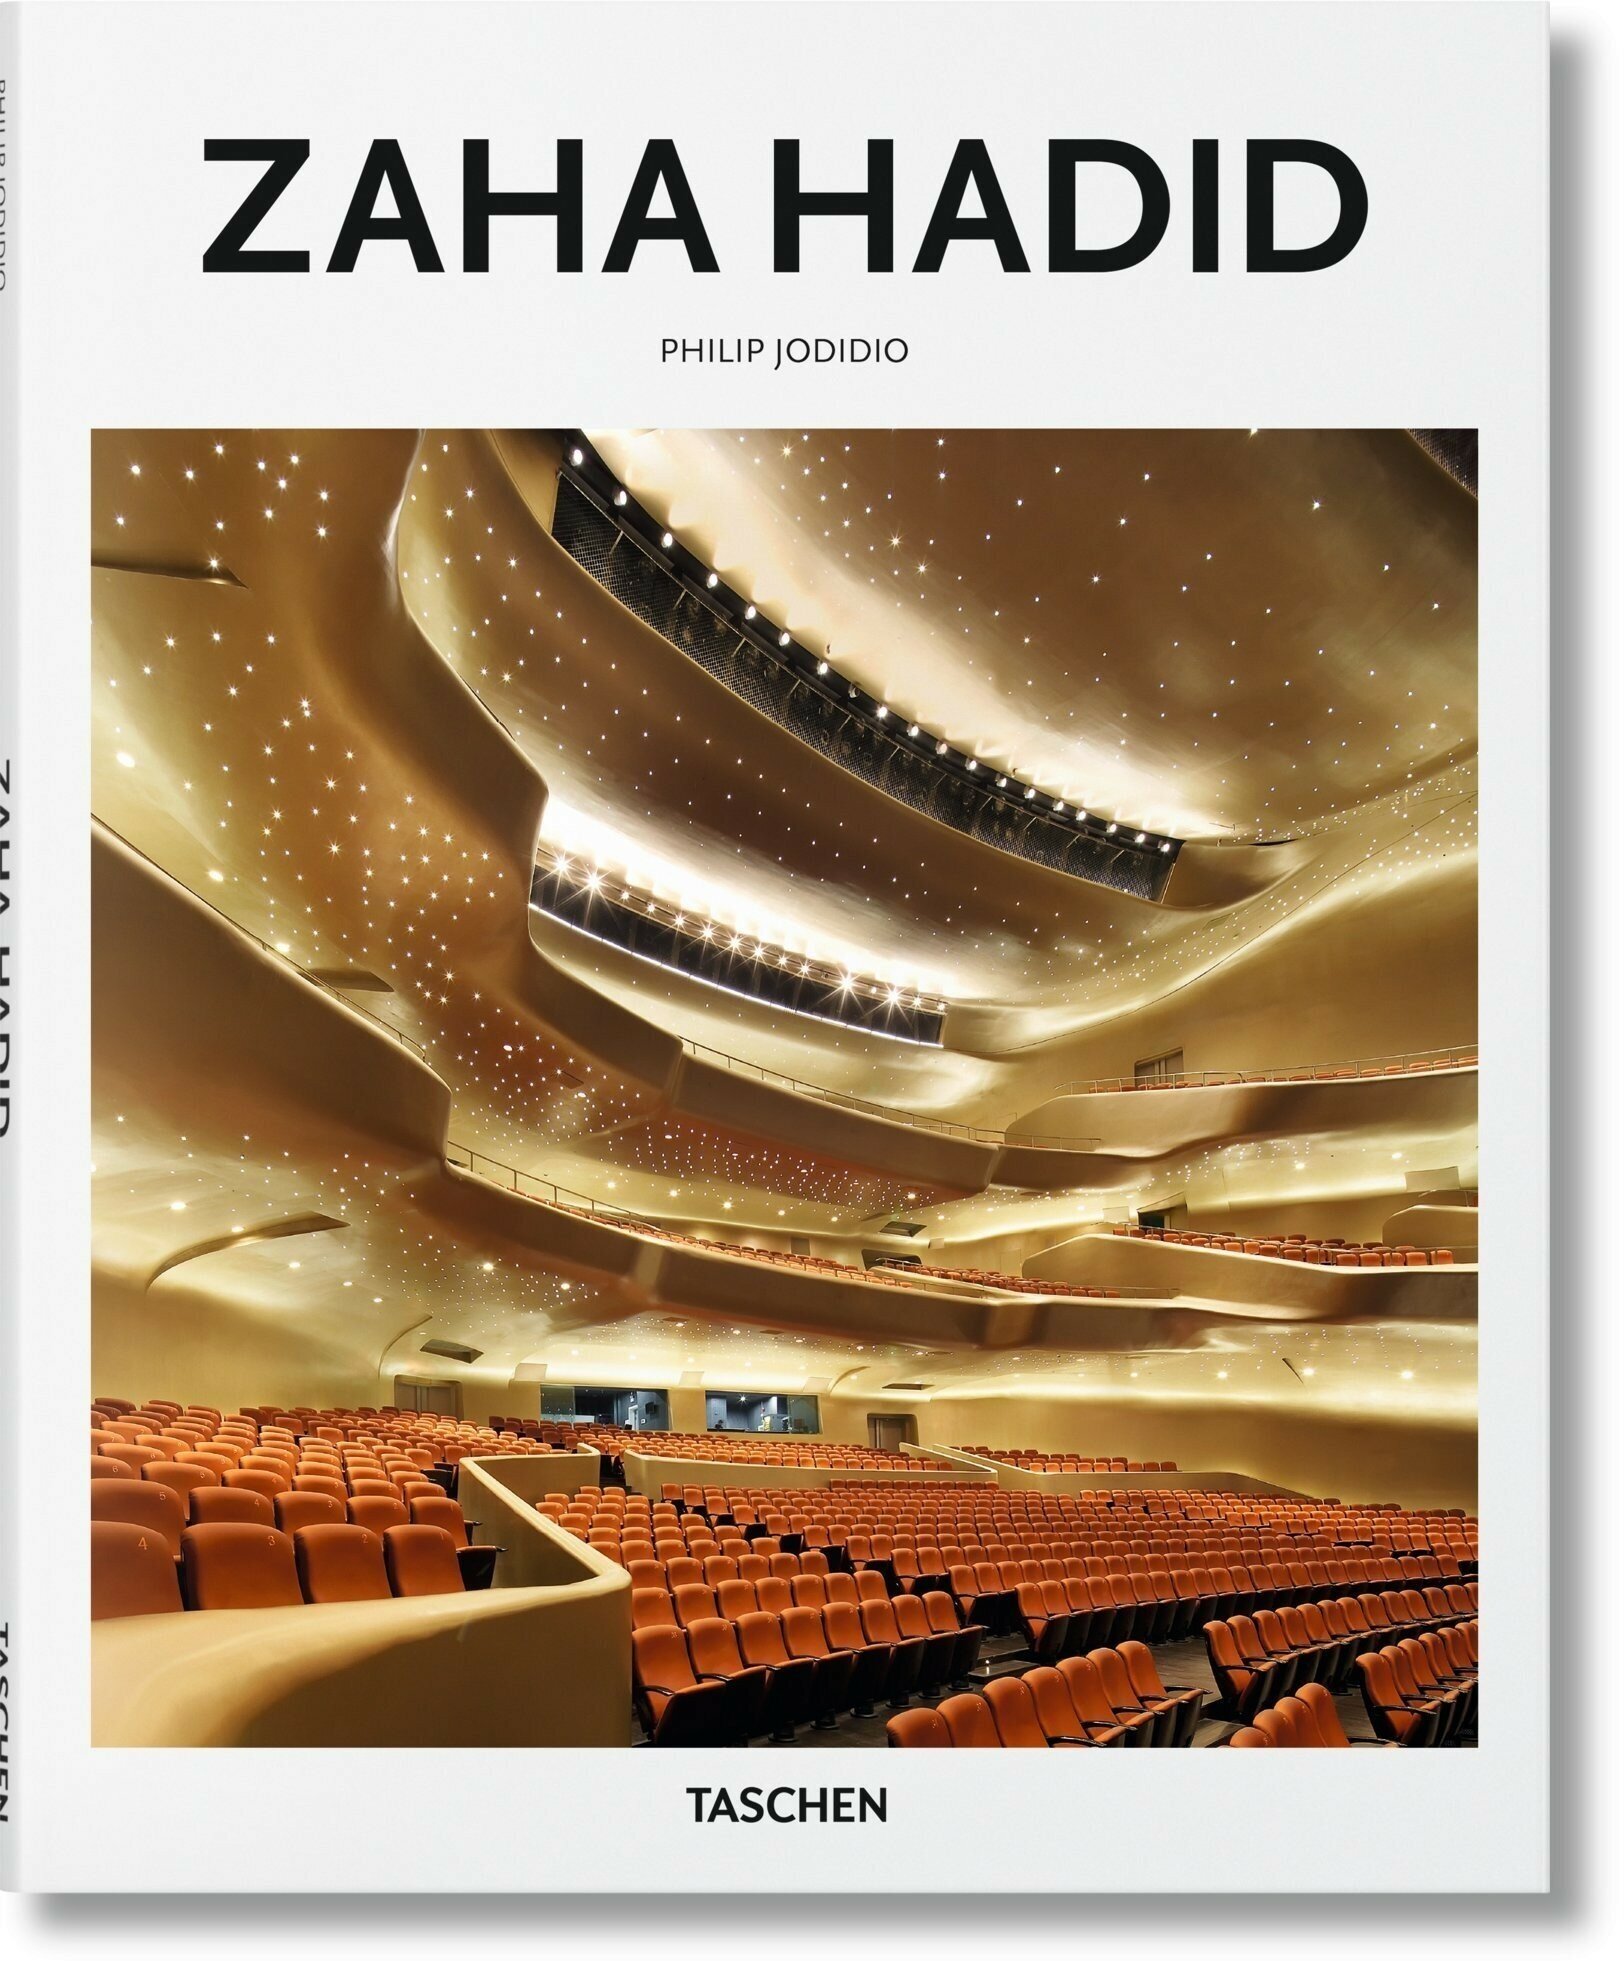 Zaha Hadid (Jodidio Philip) - фото №1